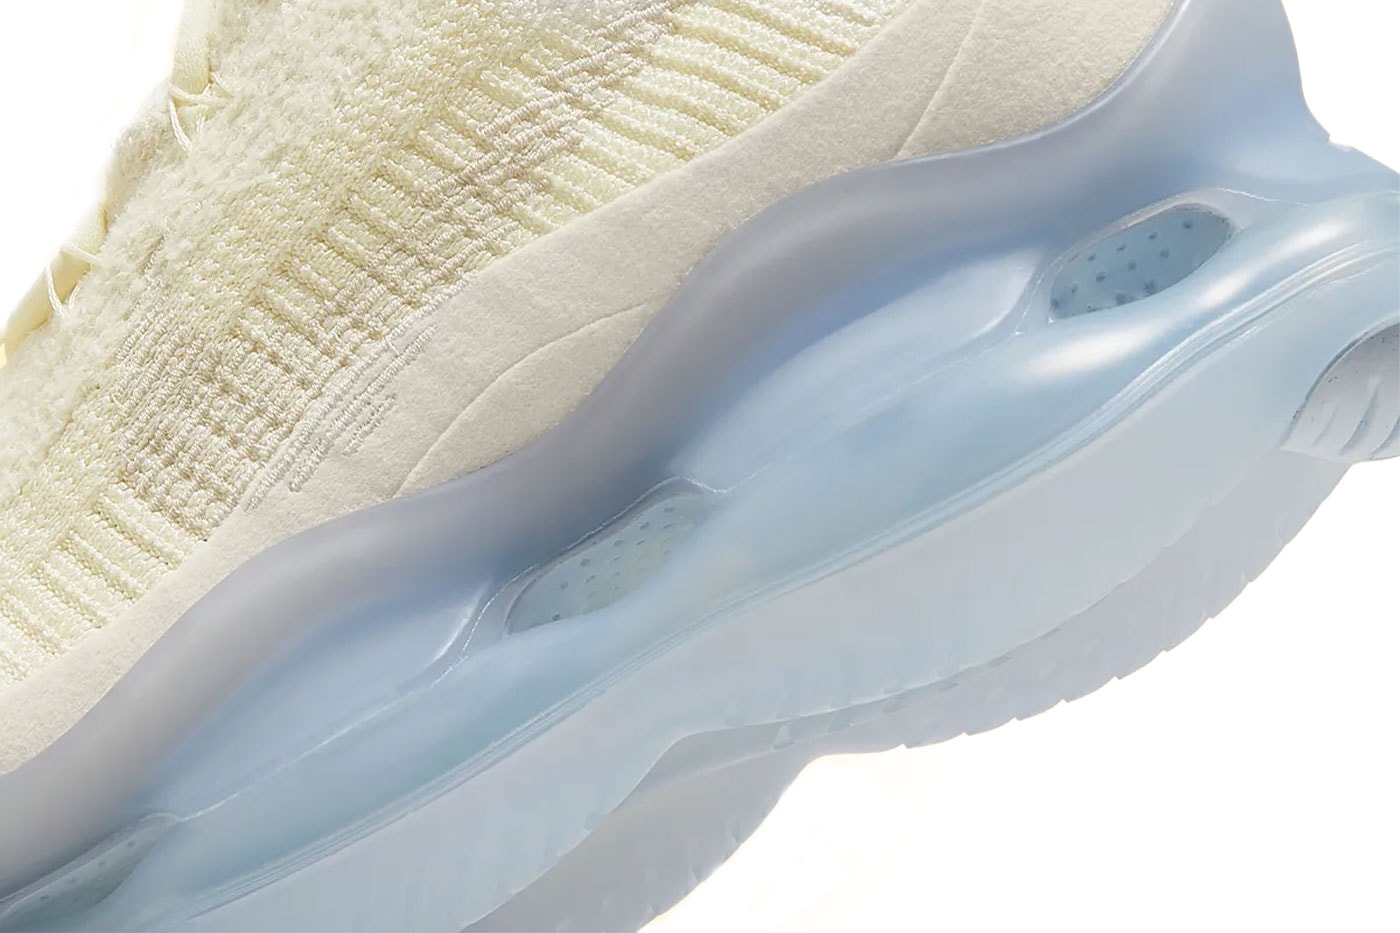 ナイキエアマックススコーピオンから初夏の柔らかな日差しを連想させる新色が登場 Nike Air Max Scorpion Patel Yellow Glacier Blue Release Info